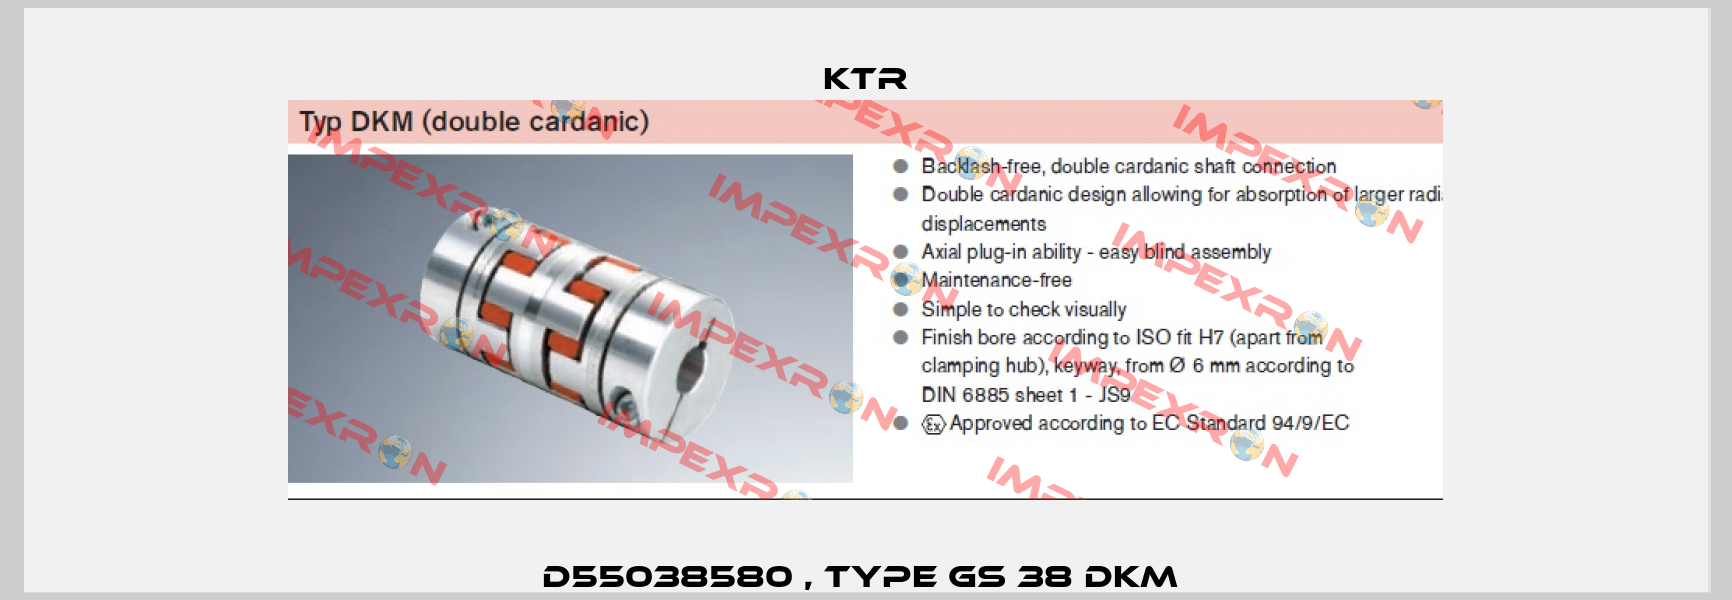 D55038580 , type GS 38 DKM  KTR